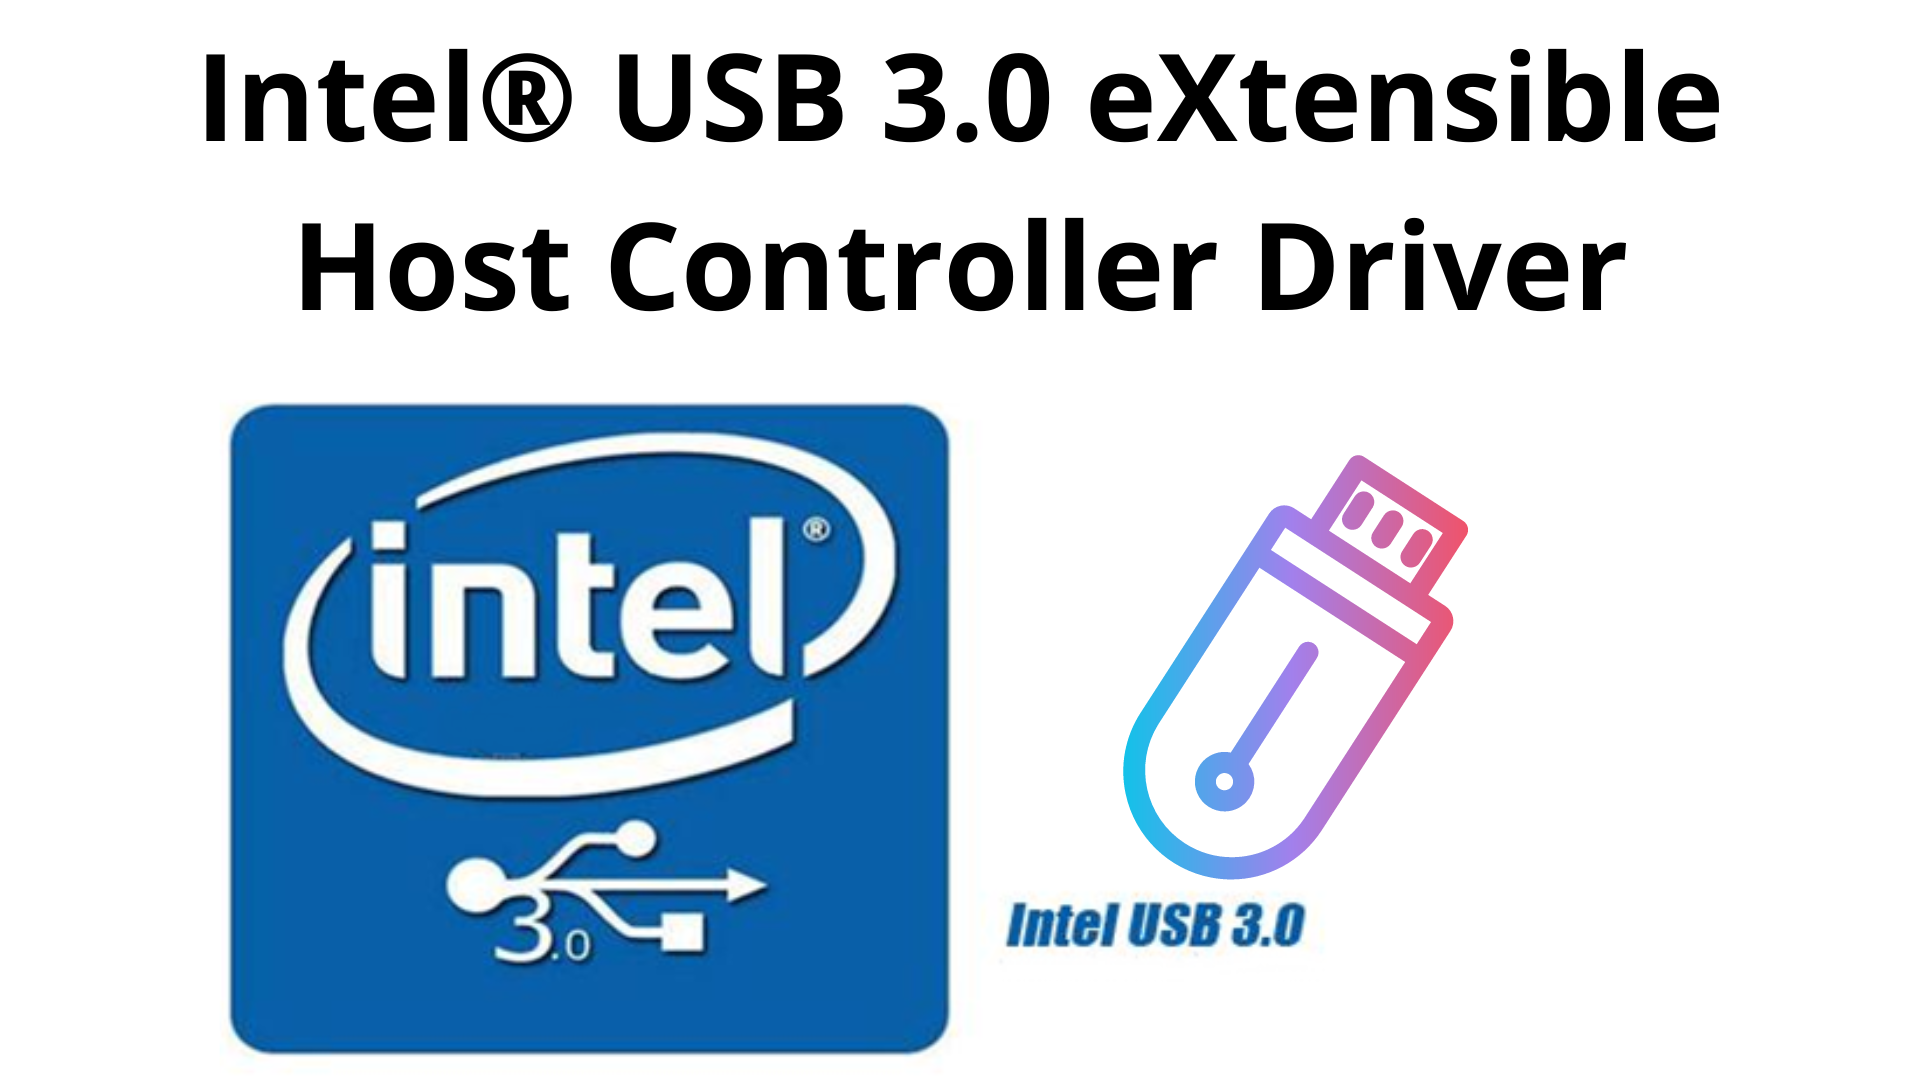 skal subtraktion Hæderlig Download Intel 3.0 USB driver for Windows 7